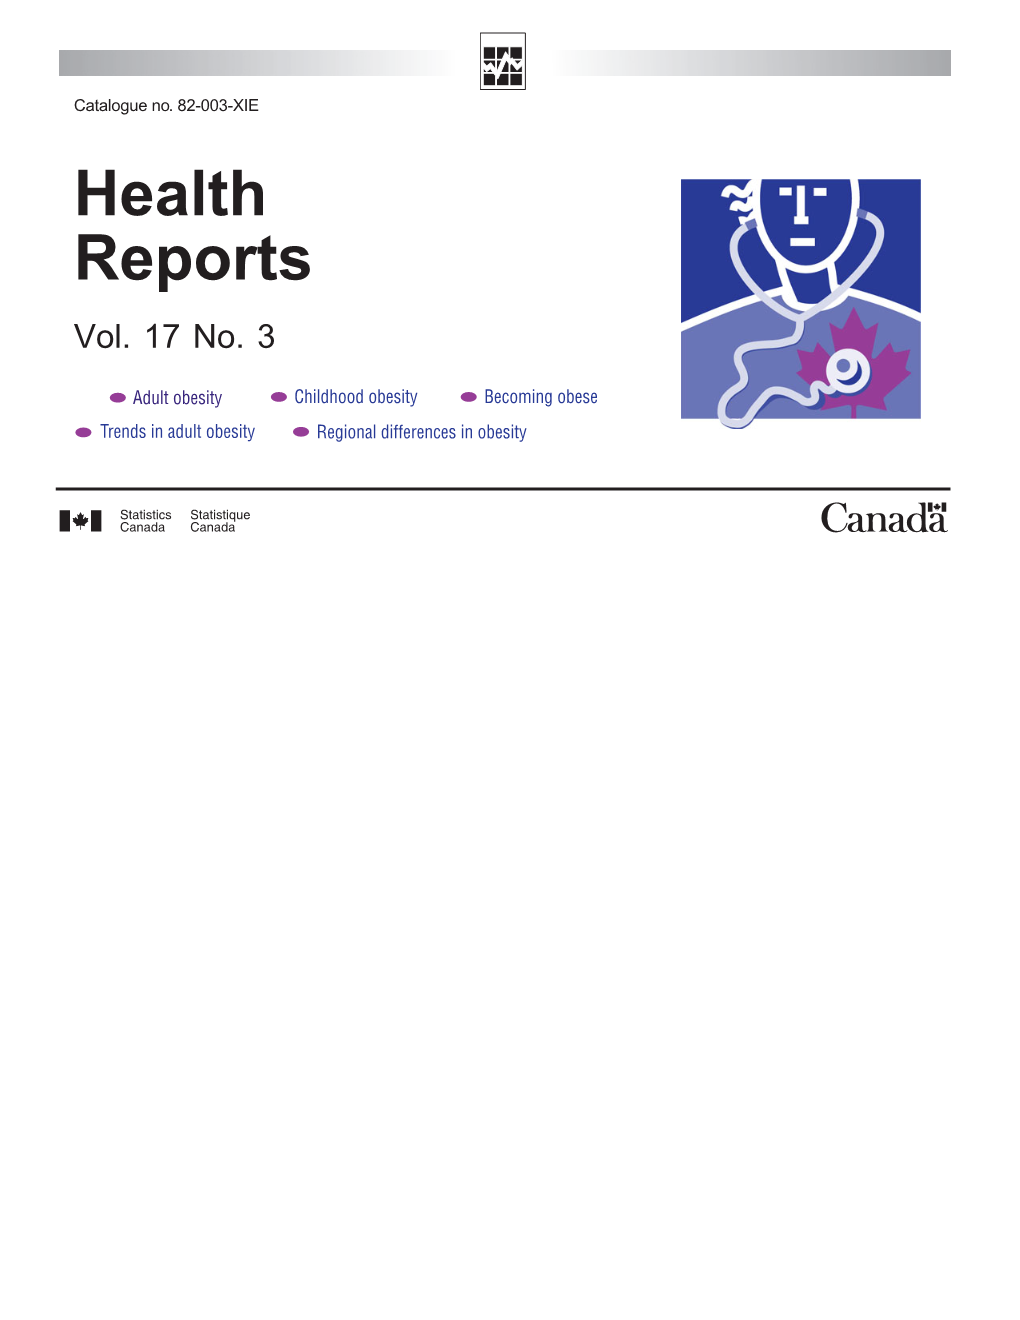 Health Reports, Vol. 17, No. 3